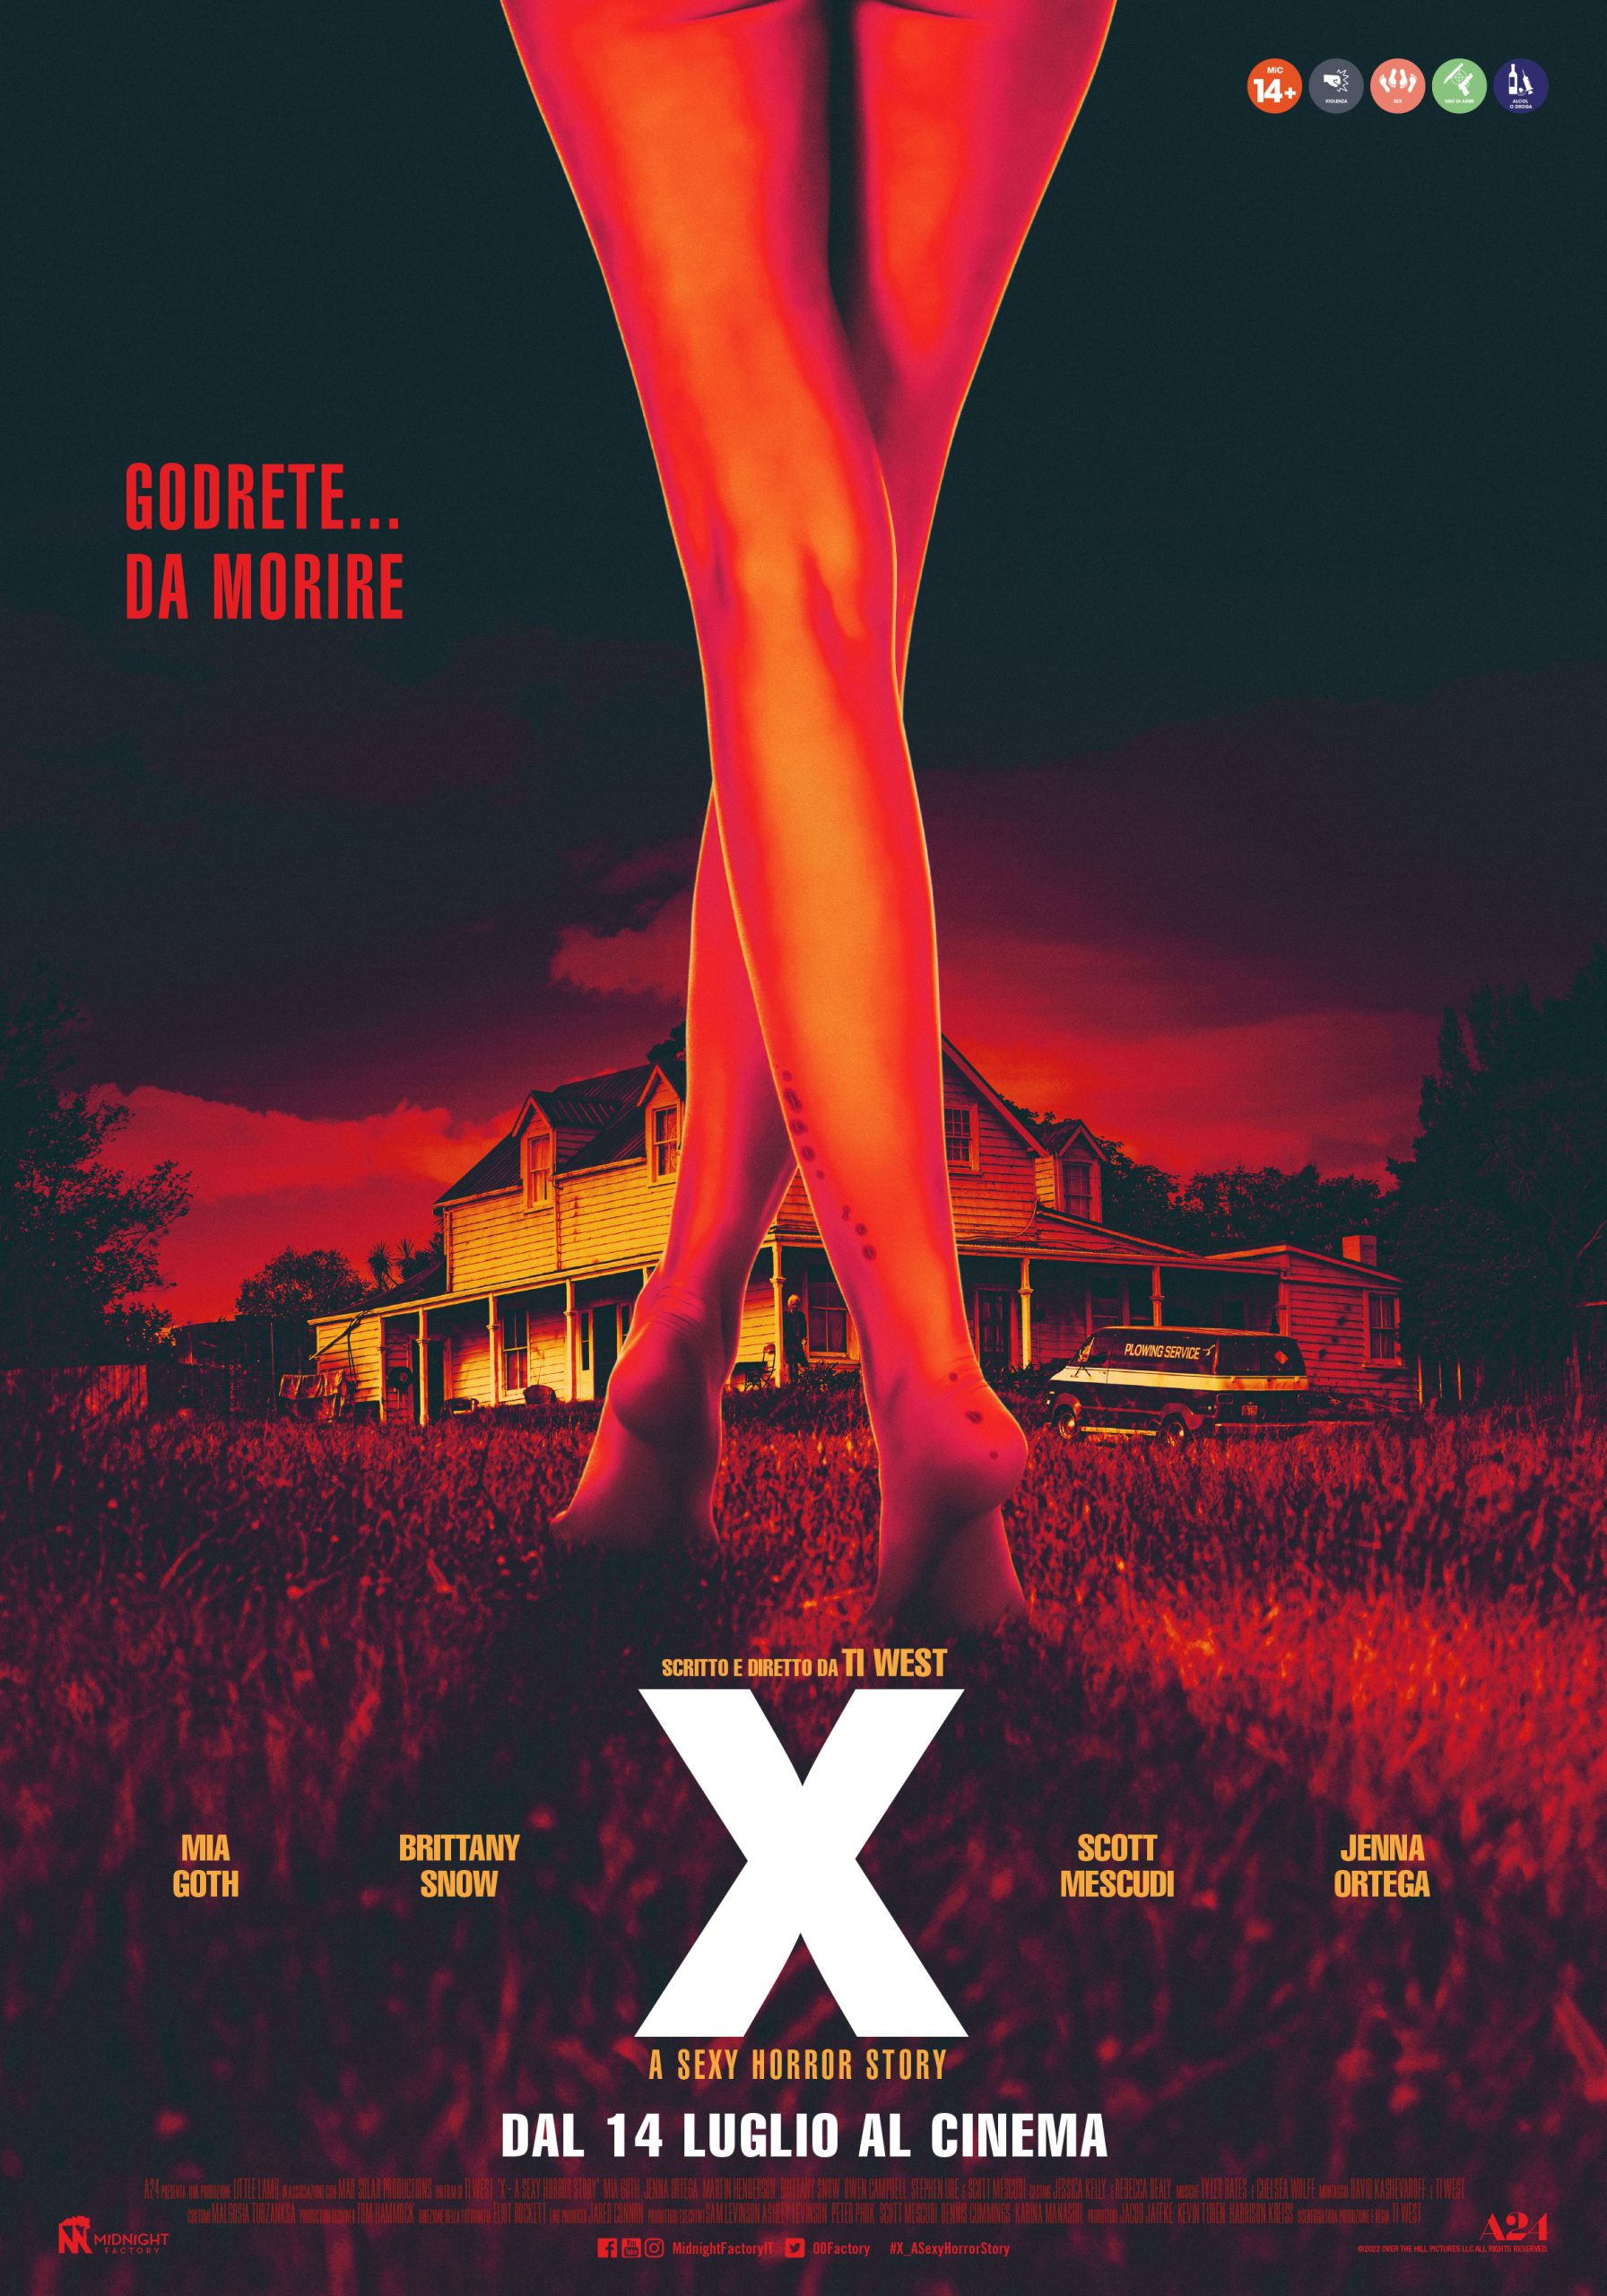 [NEWS] Il trailer italiano di X – A Sexy Horror Story